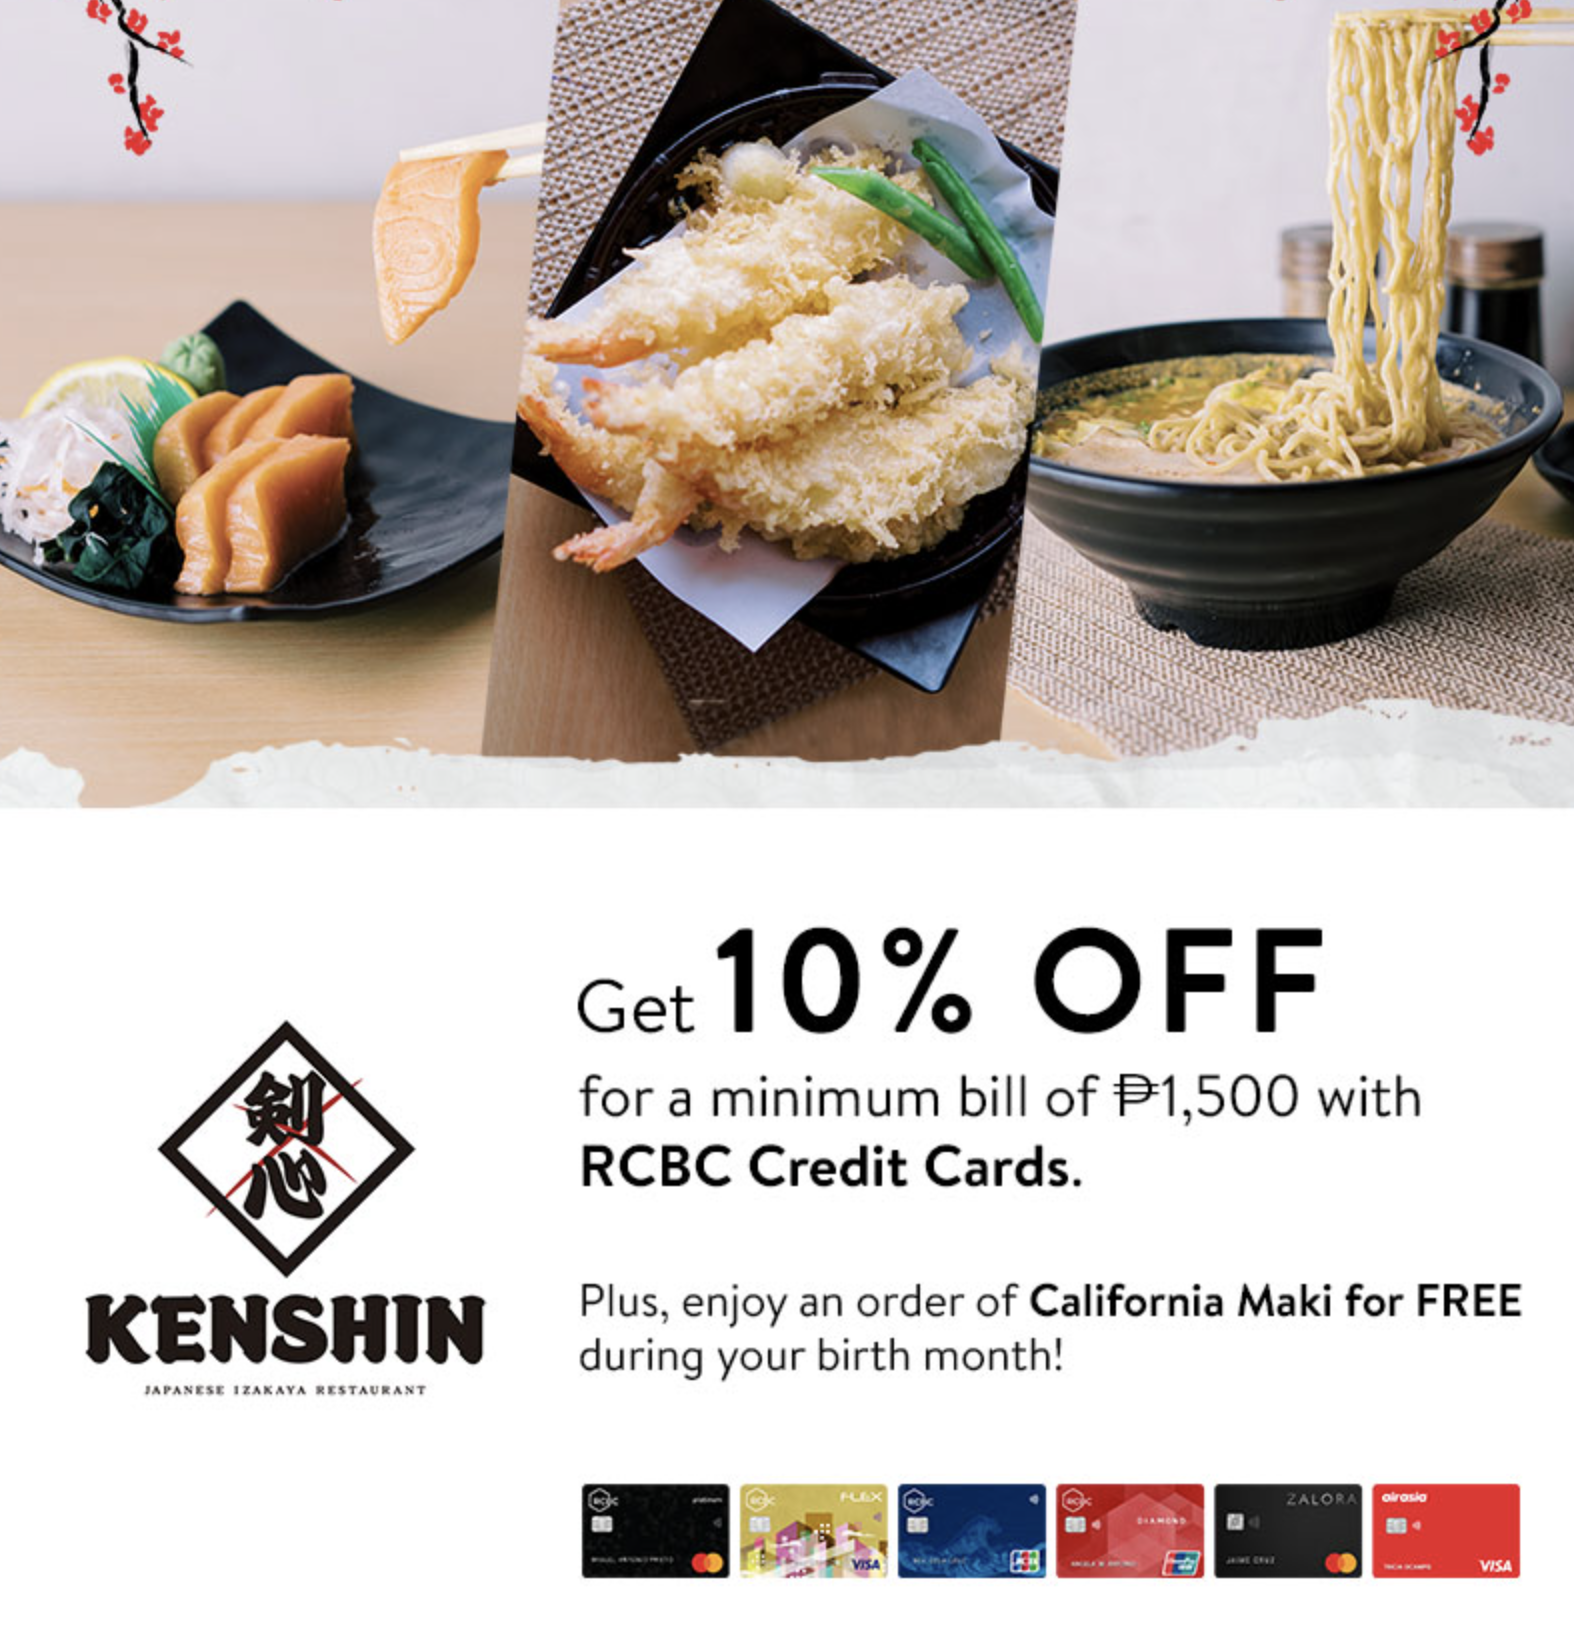 rcbc credit card promos - 10% Discount at Kenshin Izakaya